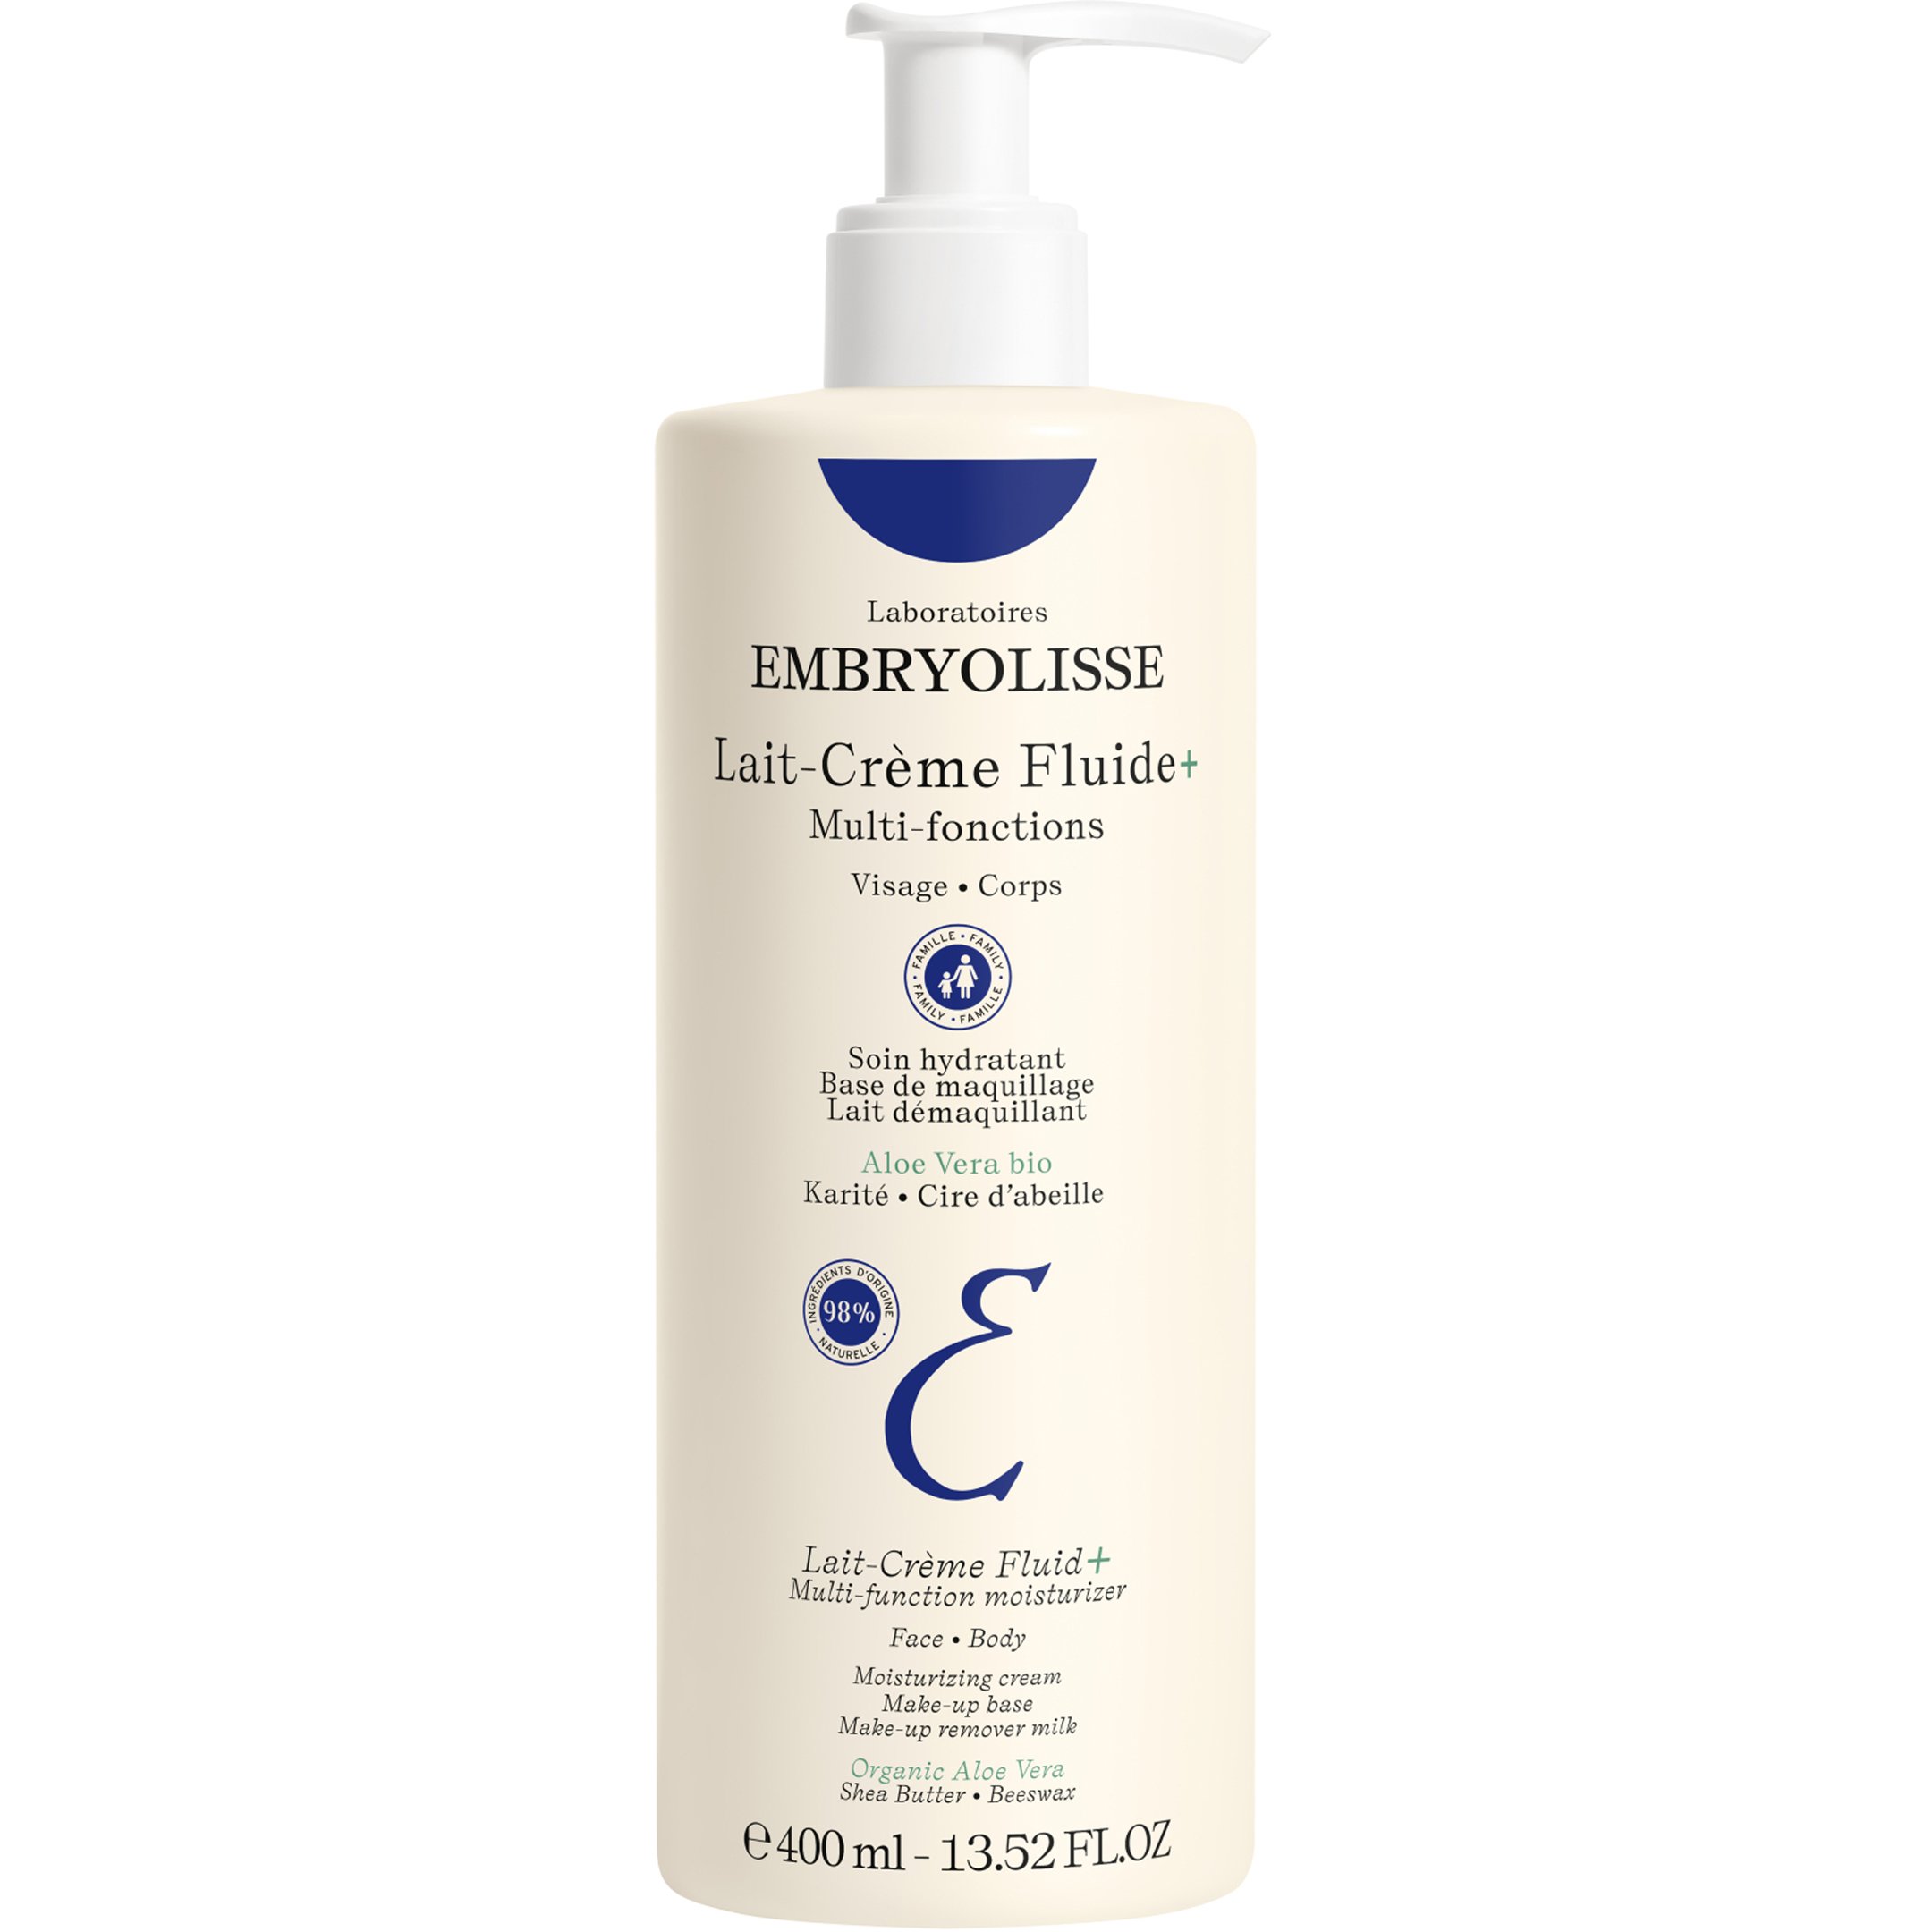 Embryolisse Lait-Crème Fluide Multi-fuction Moisturizer Face – Body Πολυχρηστική Λοσιόν 4 σε 1 για Πρόσωπο – Σώμα 400ml